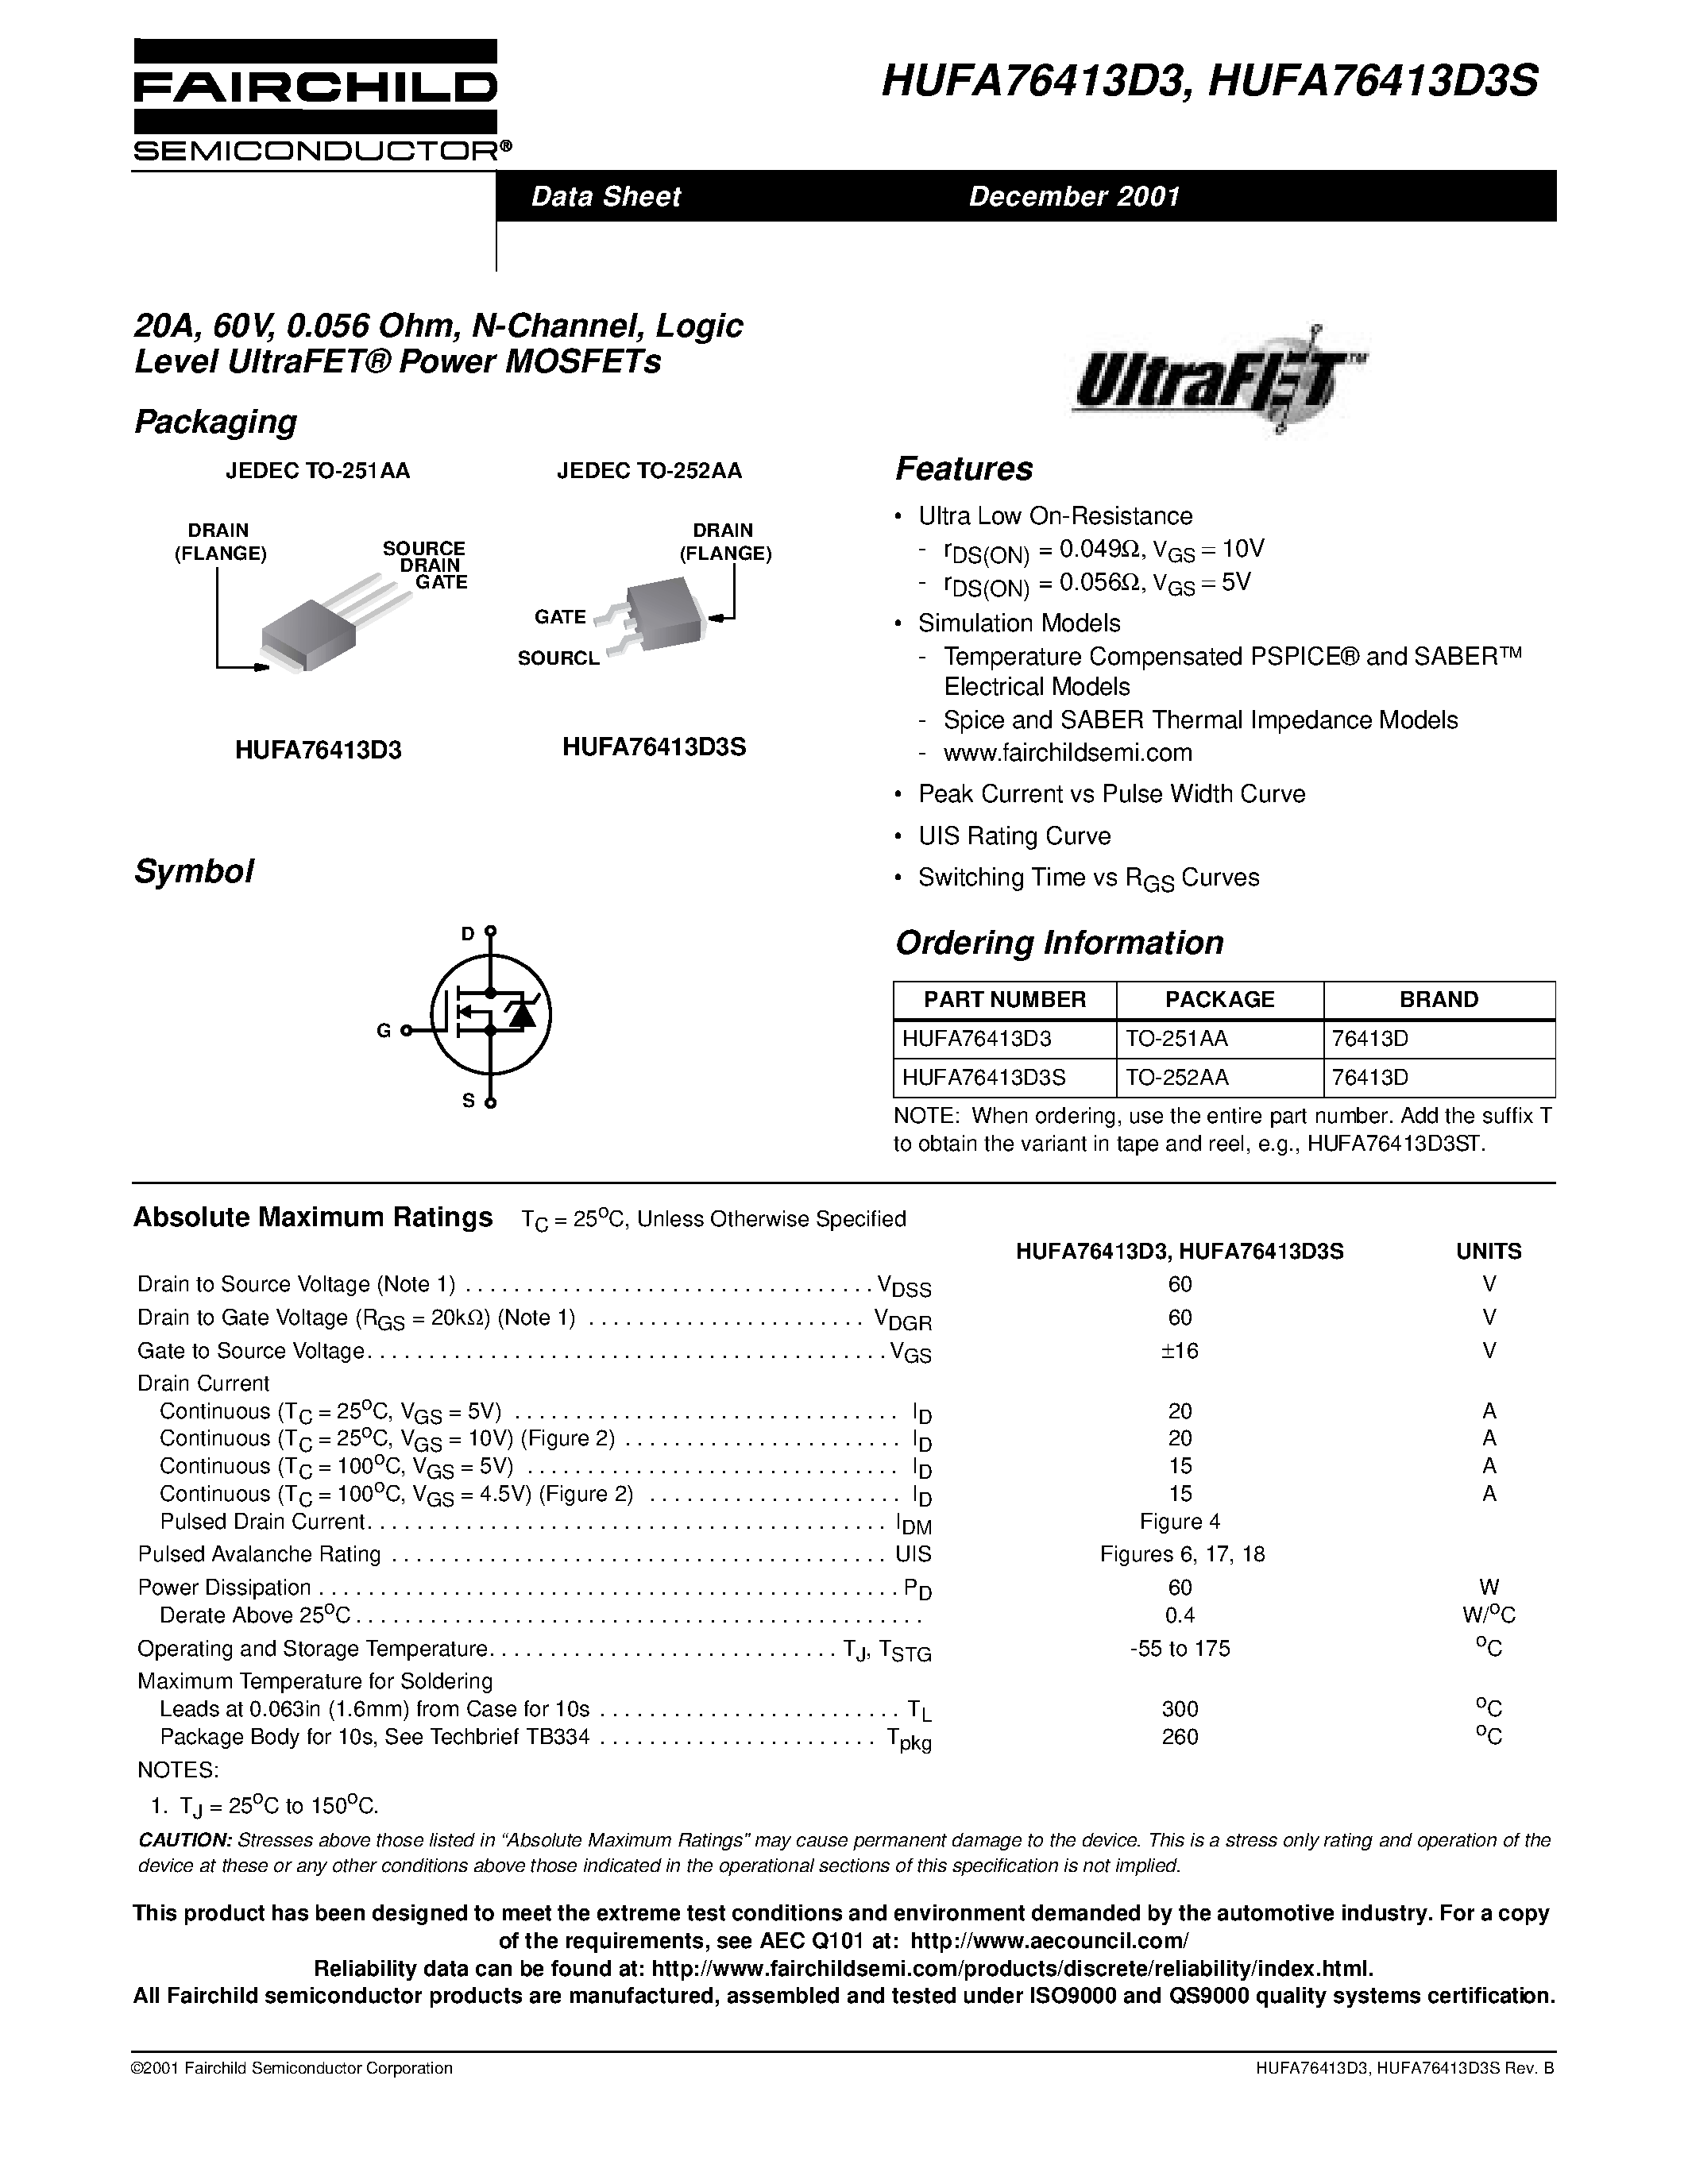 Даташит HUFA76413D3 - 20A/ 60V/ 0.056 Ohm/ N-Channel/ Logic Level UltraFET Power MOSFETs страница 1